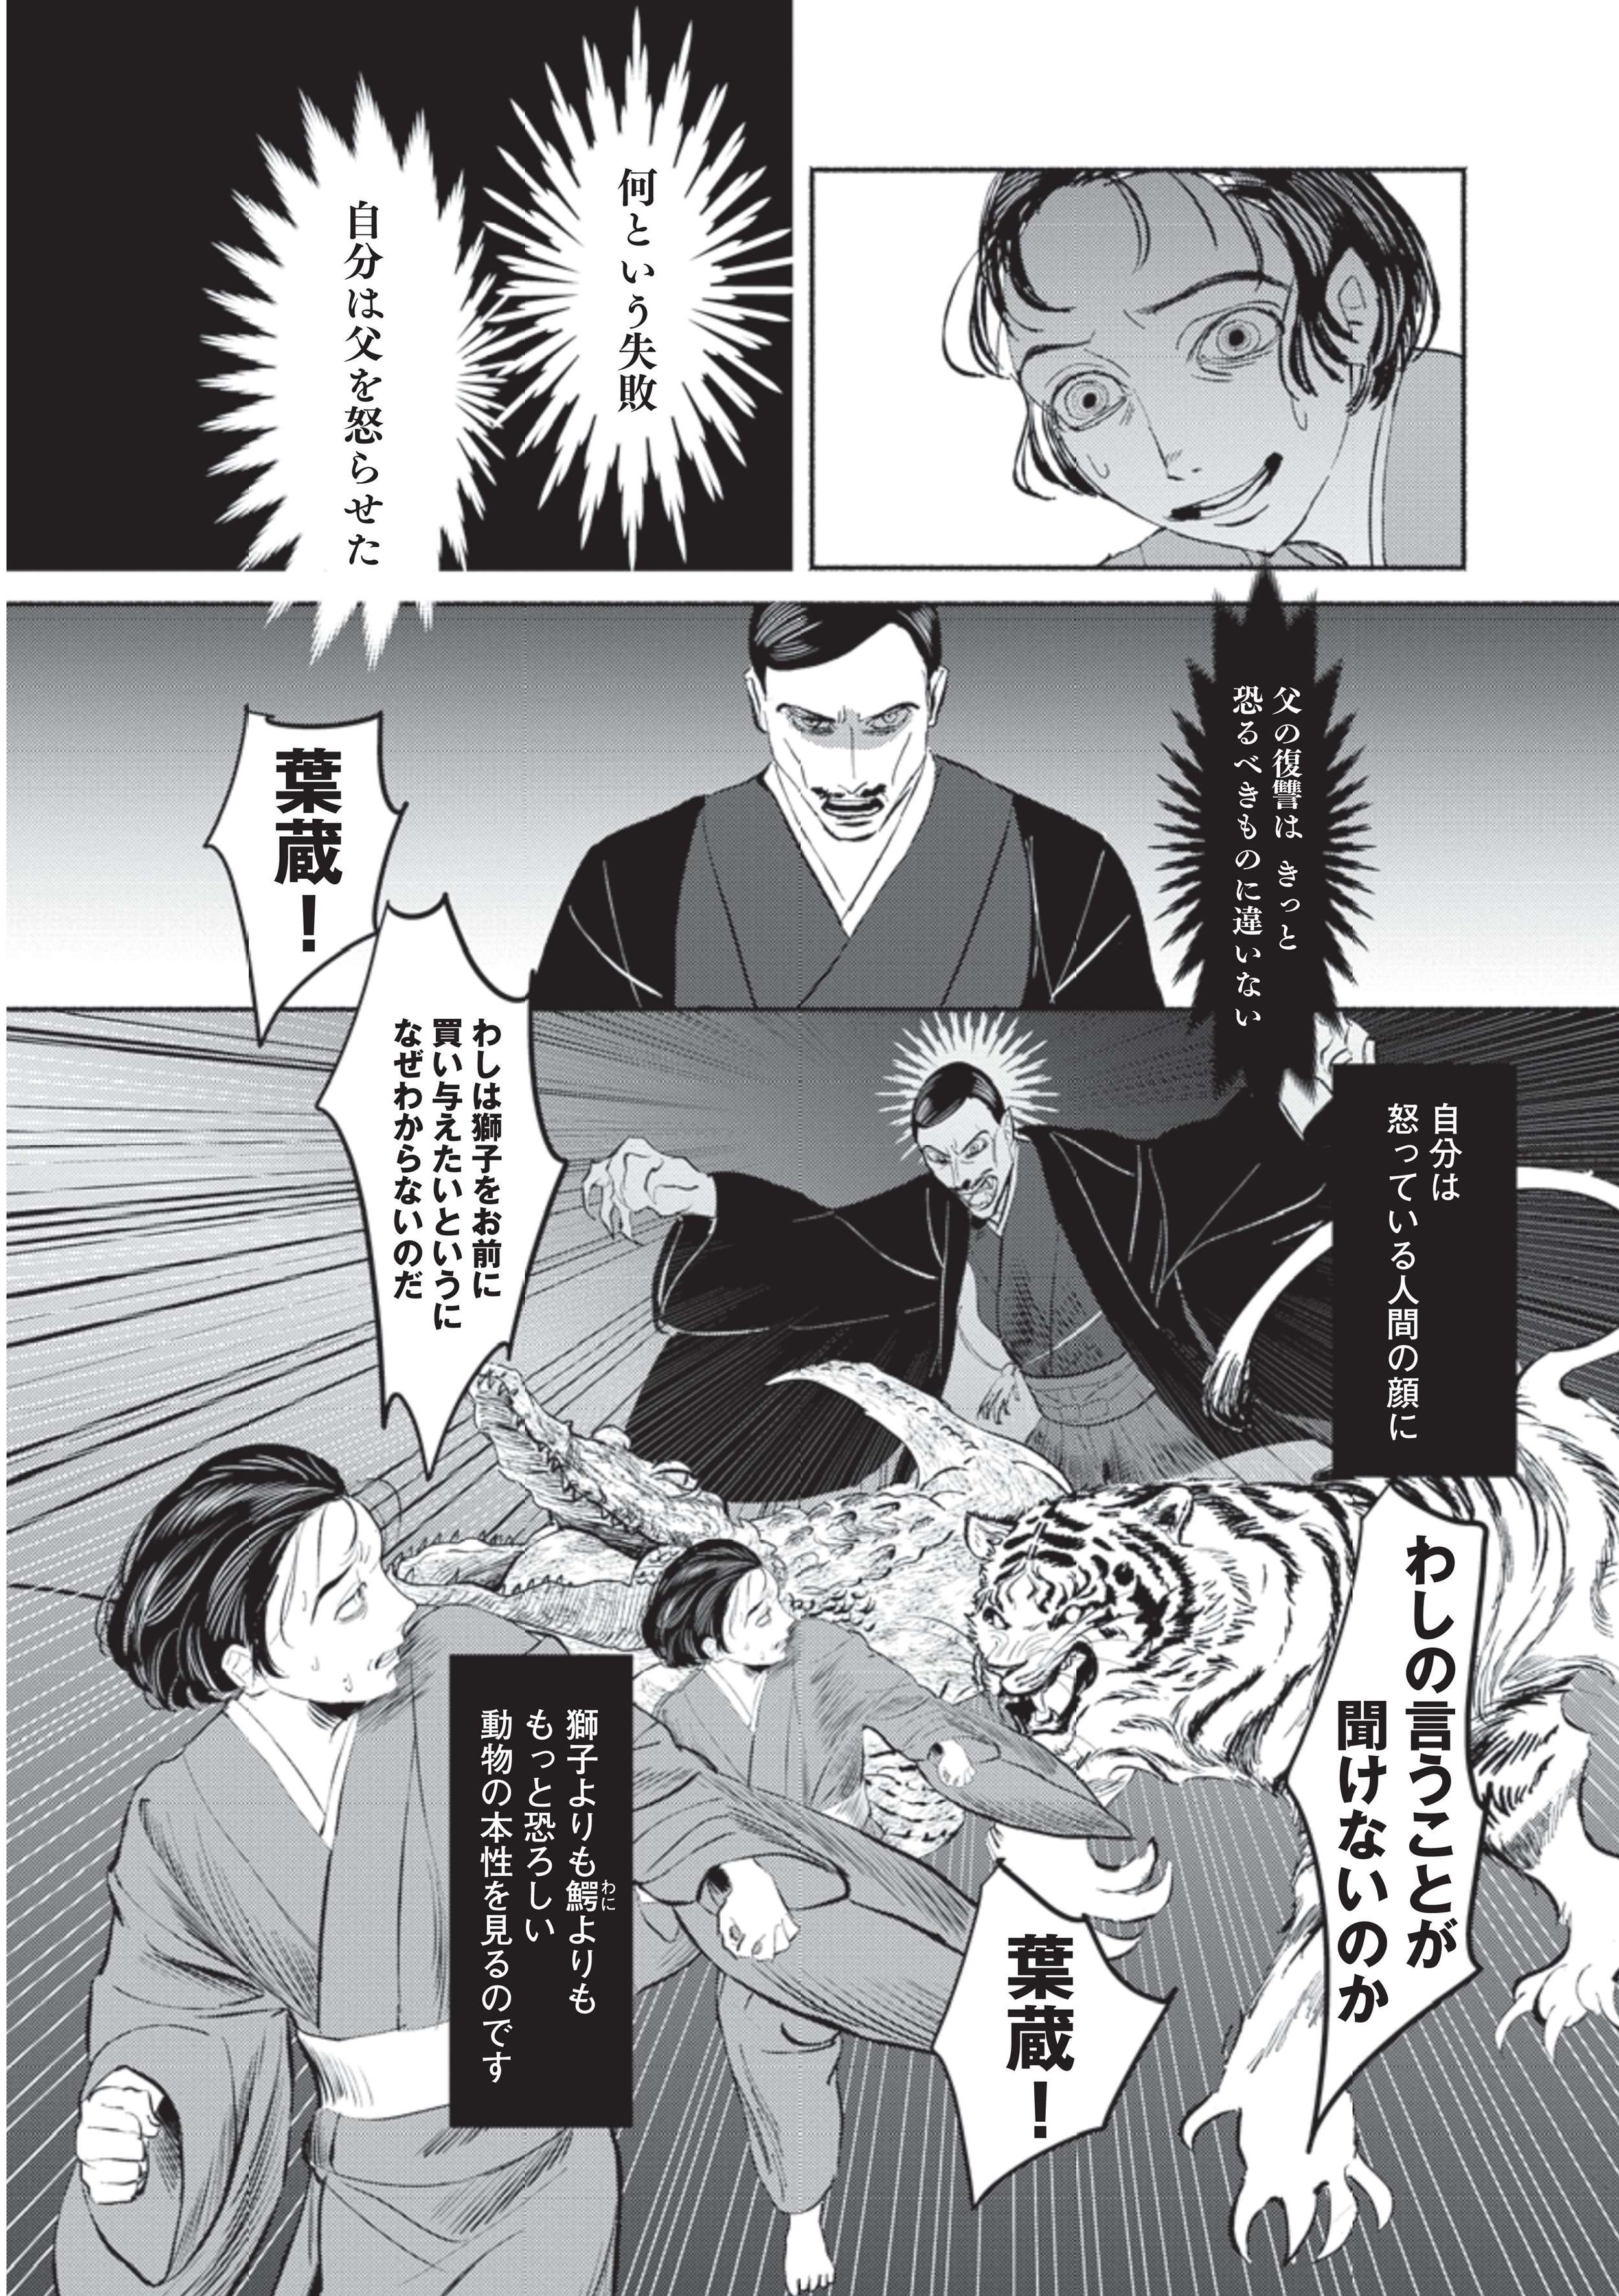 ほしいものを答えられない... 家族からも理解されずに少年は恐怖する／漫画 人間失格 manga_ningenshikkaku3-3.jpg